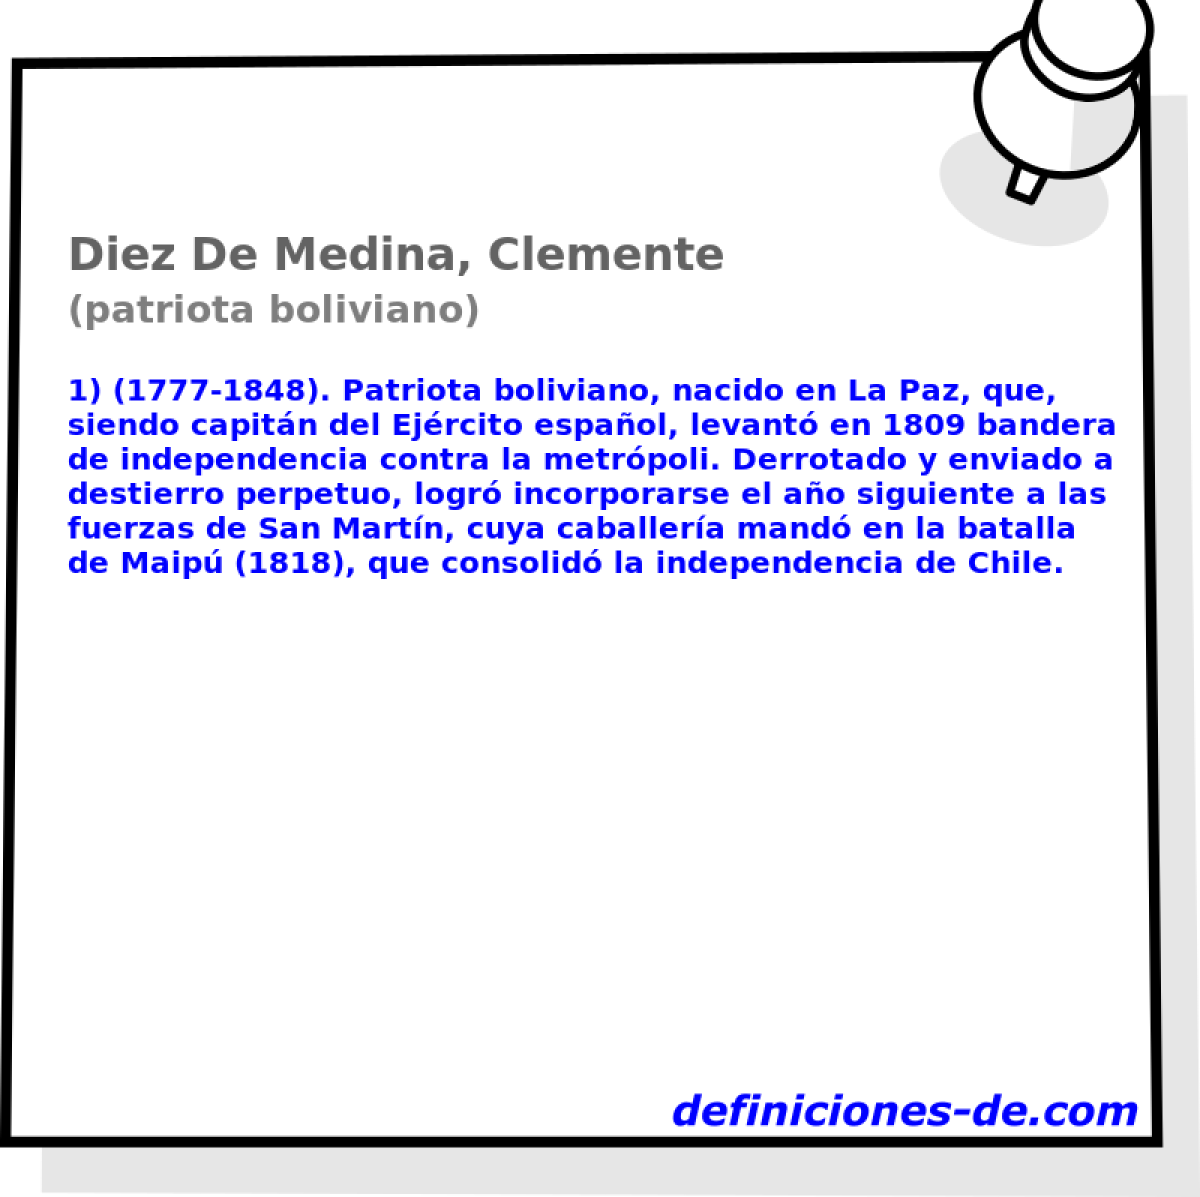 Diez De Medina, Clemente (patriota boliviano)